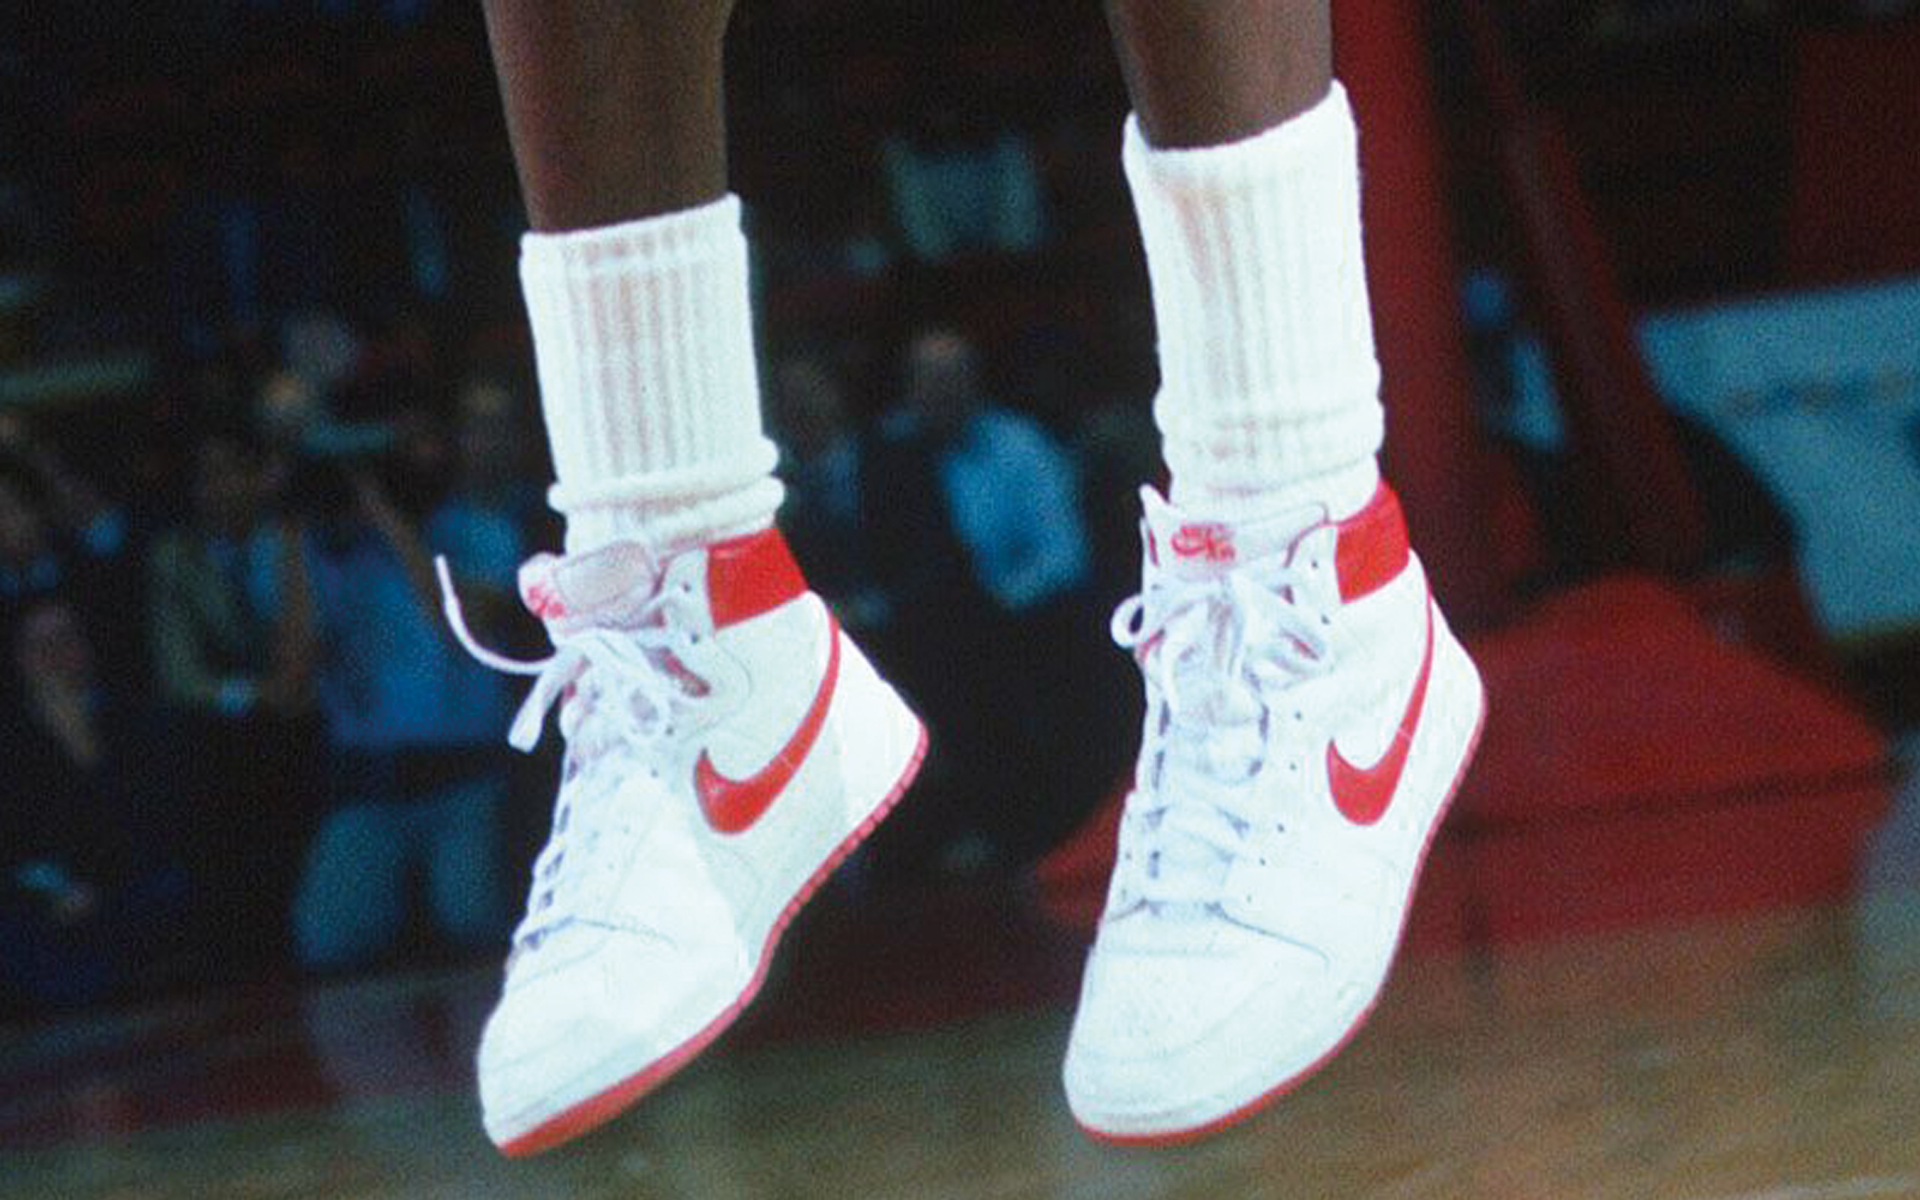 Basketbalschoenen van Michael Jordan één van de duurste paar sneakers ooit